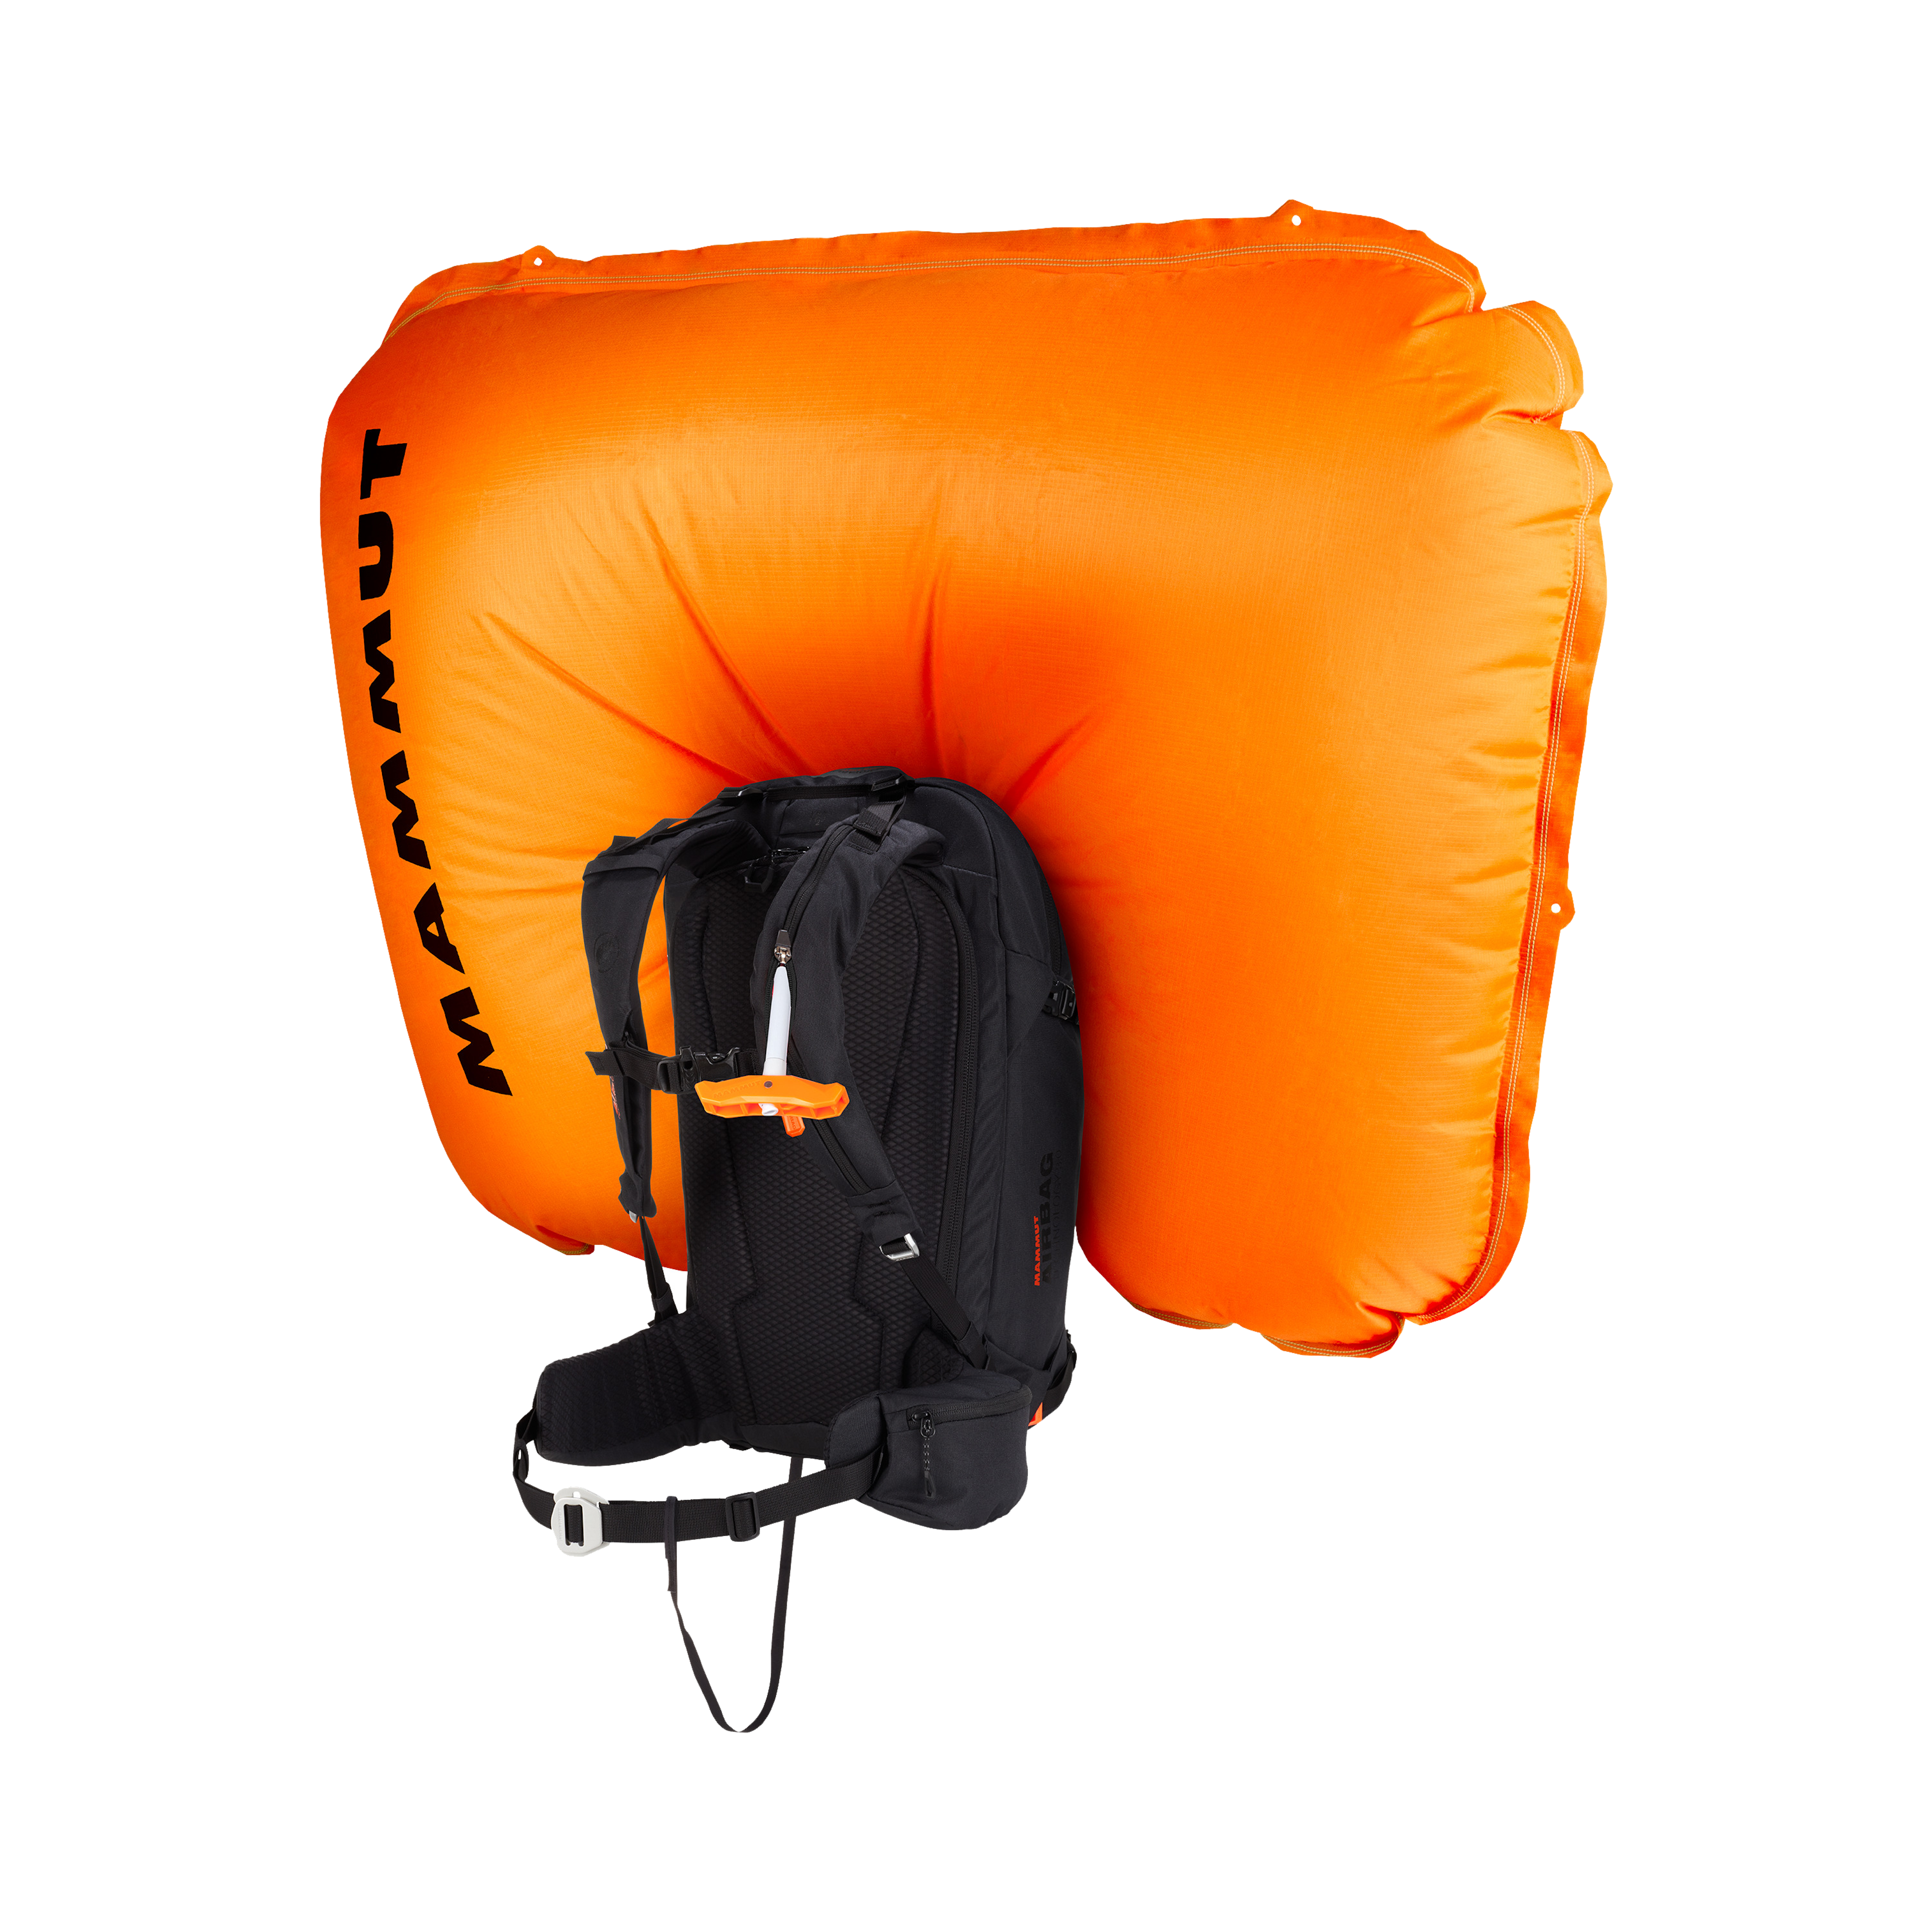 Black freeride backpack with airbag